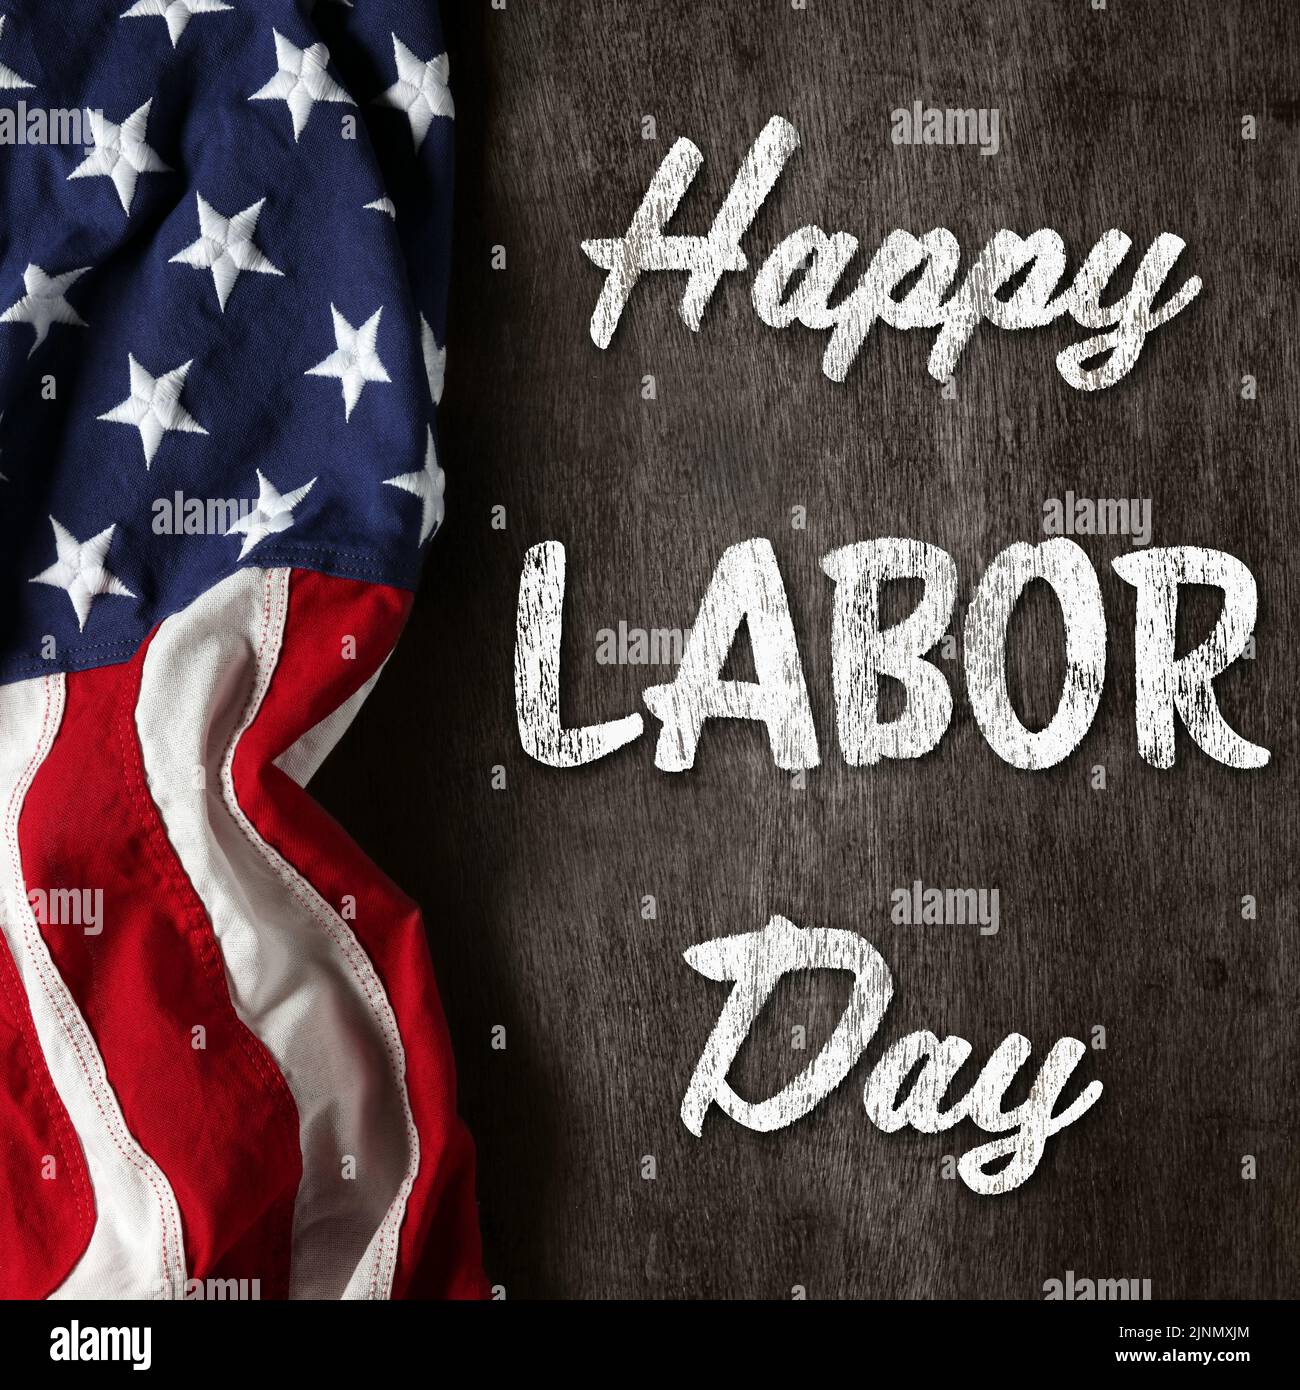 US-amerikanische Flagge auf abgenutztem schwarzem Hintergrund. Zur Feier des USA Labor Day. Mit Happy Labor Day Text. Stockfoto